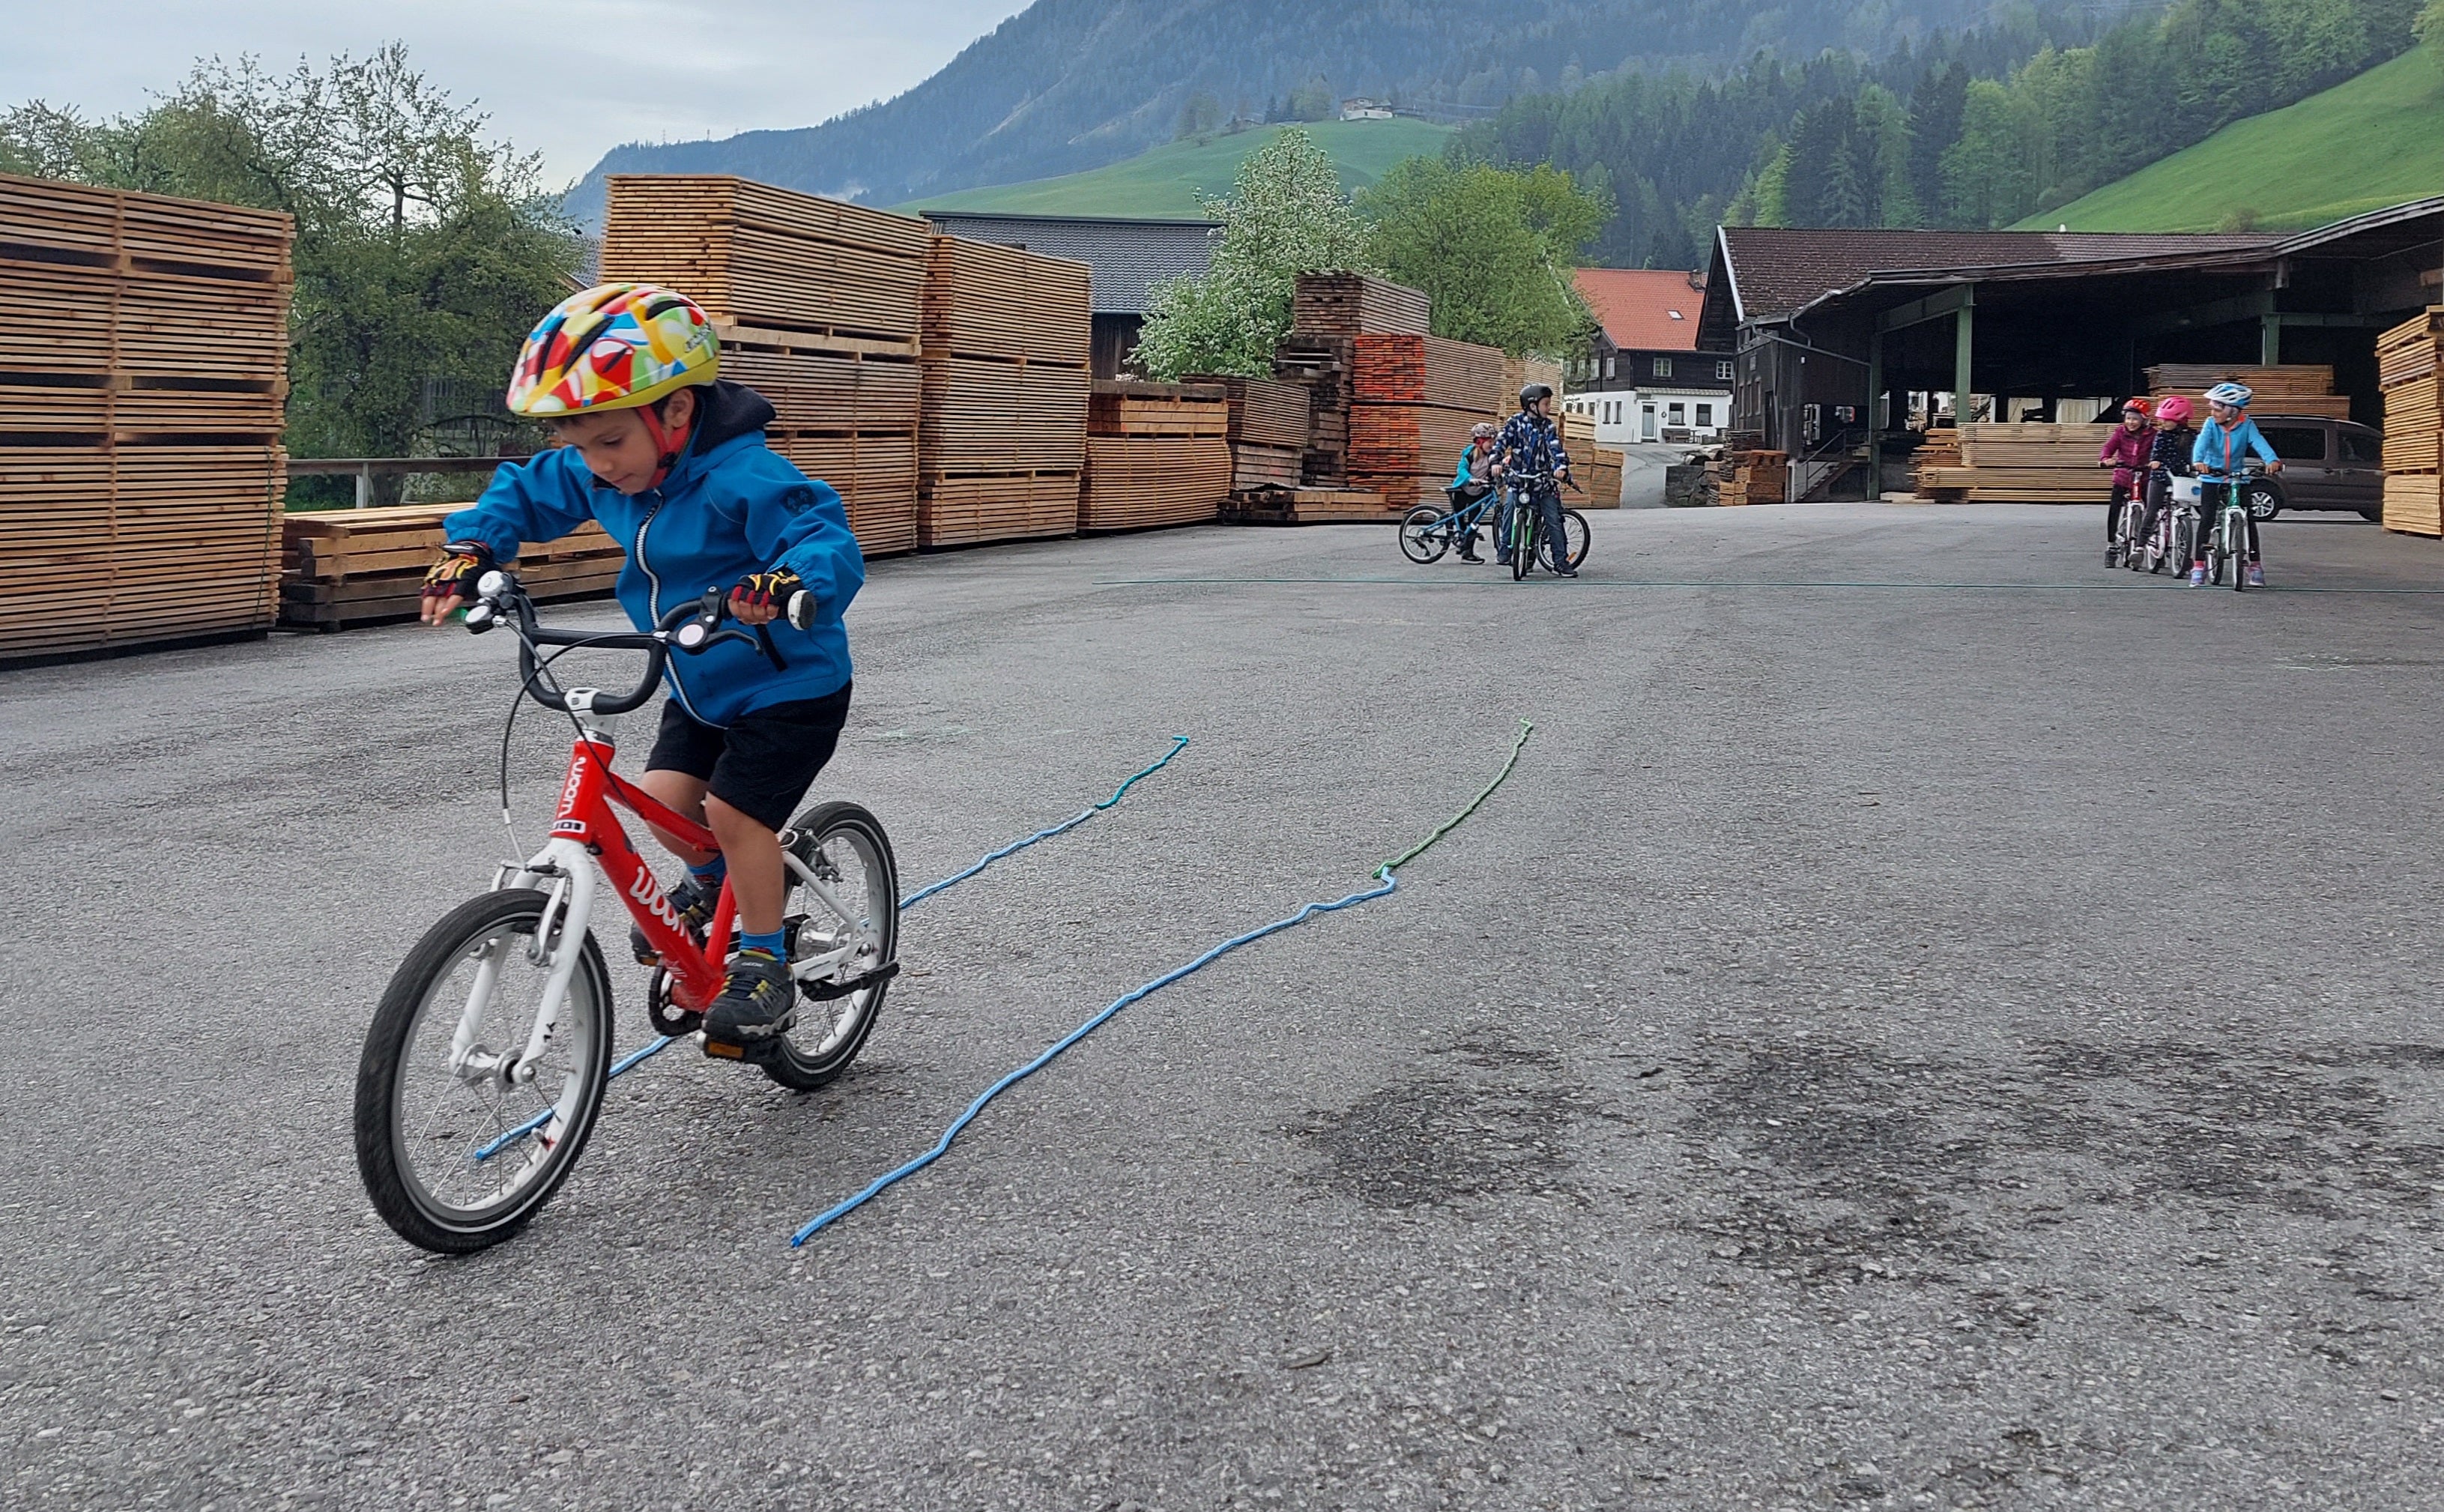 Ein kleiner Junge fährt geradeaus zwischen zwei Schnüren auf dem Boden auf einem woom bike.